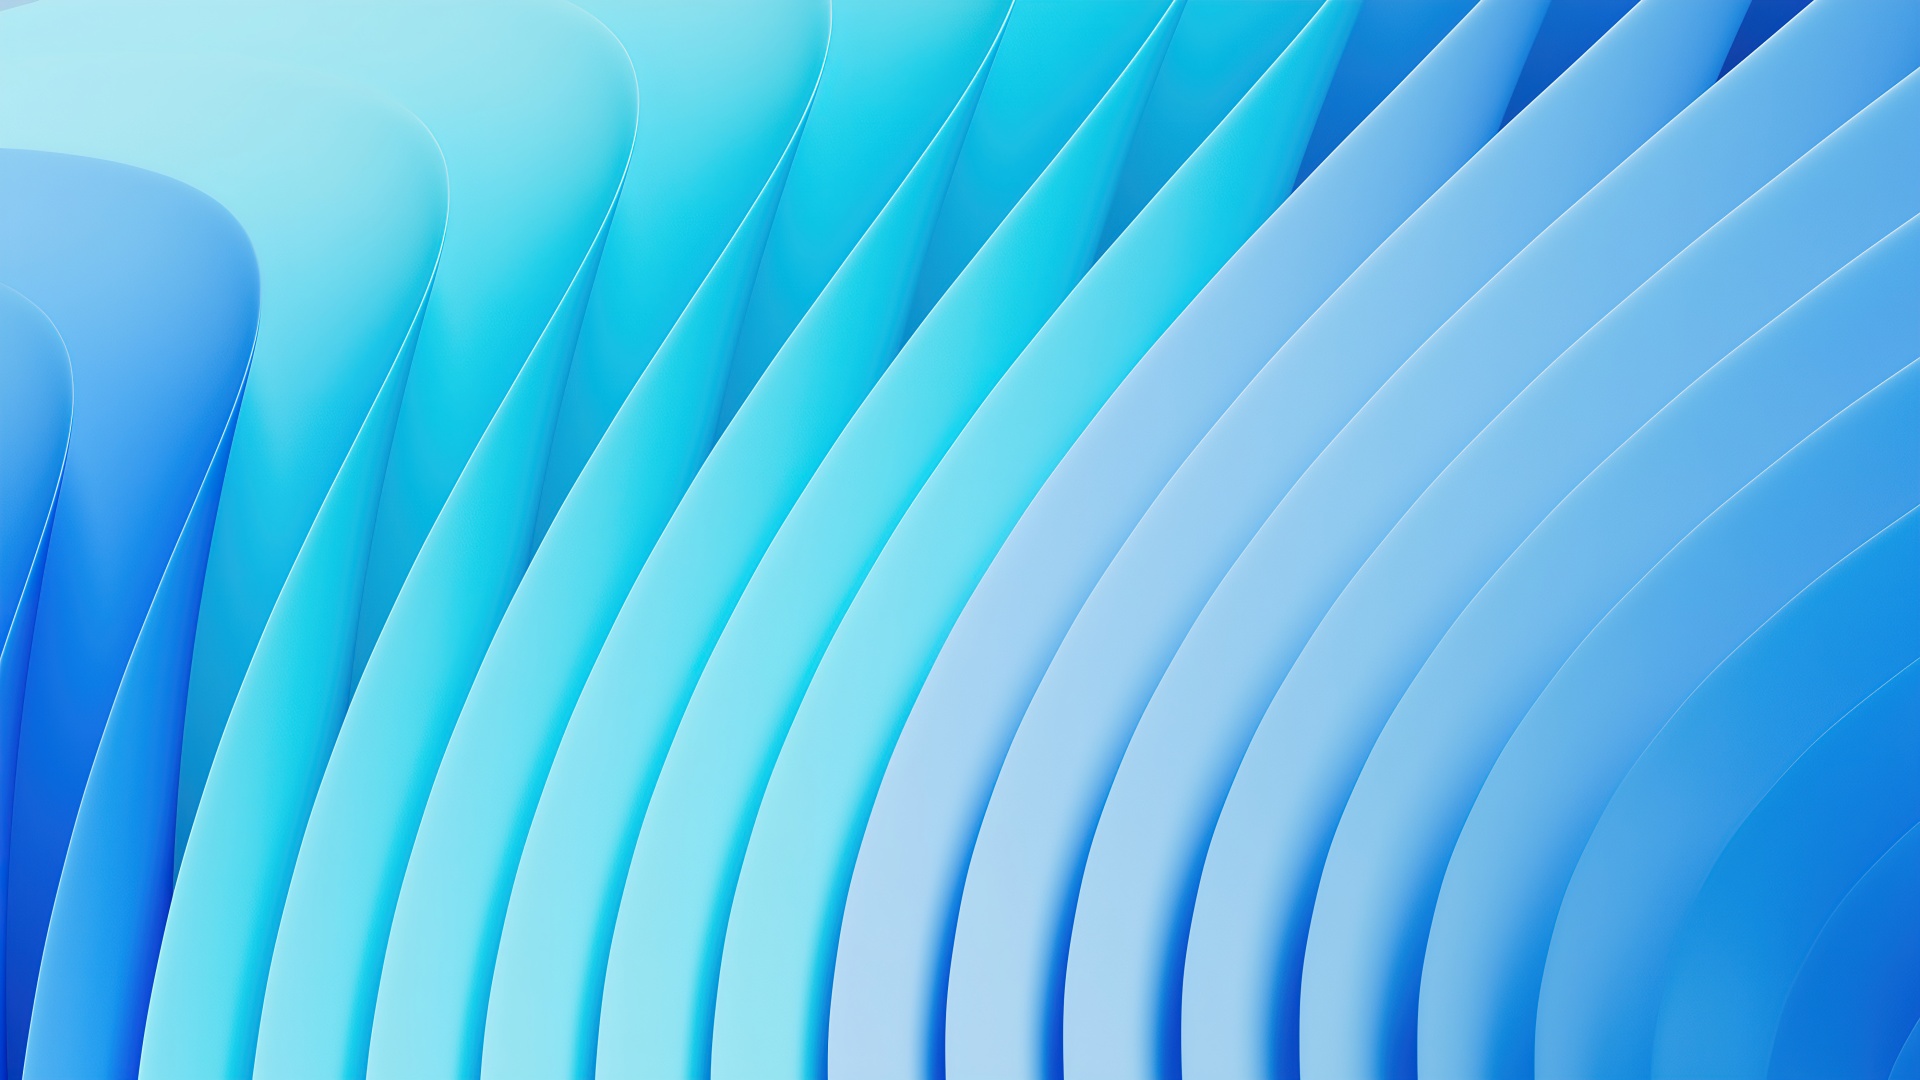 Hình nền Windows 11 xanh dương: Nếu bạn là một người yêu màu xanh dương và đang chuyển sang nền tảng Windows 11 mới thì bức ảnh hình nền xanh dương Windows 11 sẽ là sự lựa chọn hoàn hảo cho bạn. Với màu sắc tuyệt đẹp và hiệu ứng ánh sáng tinh tế, hãy để hình nền này tạo nên một không gian làm việc mới cho bạn.